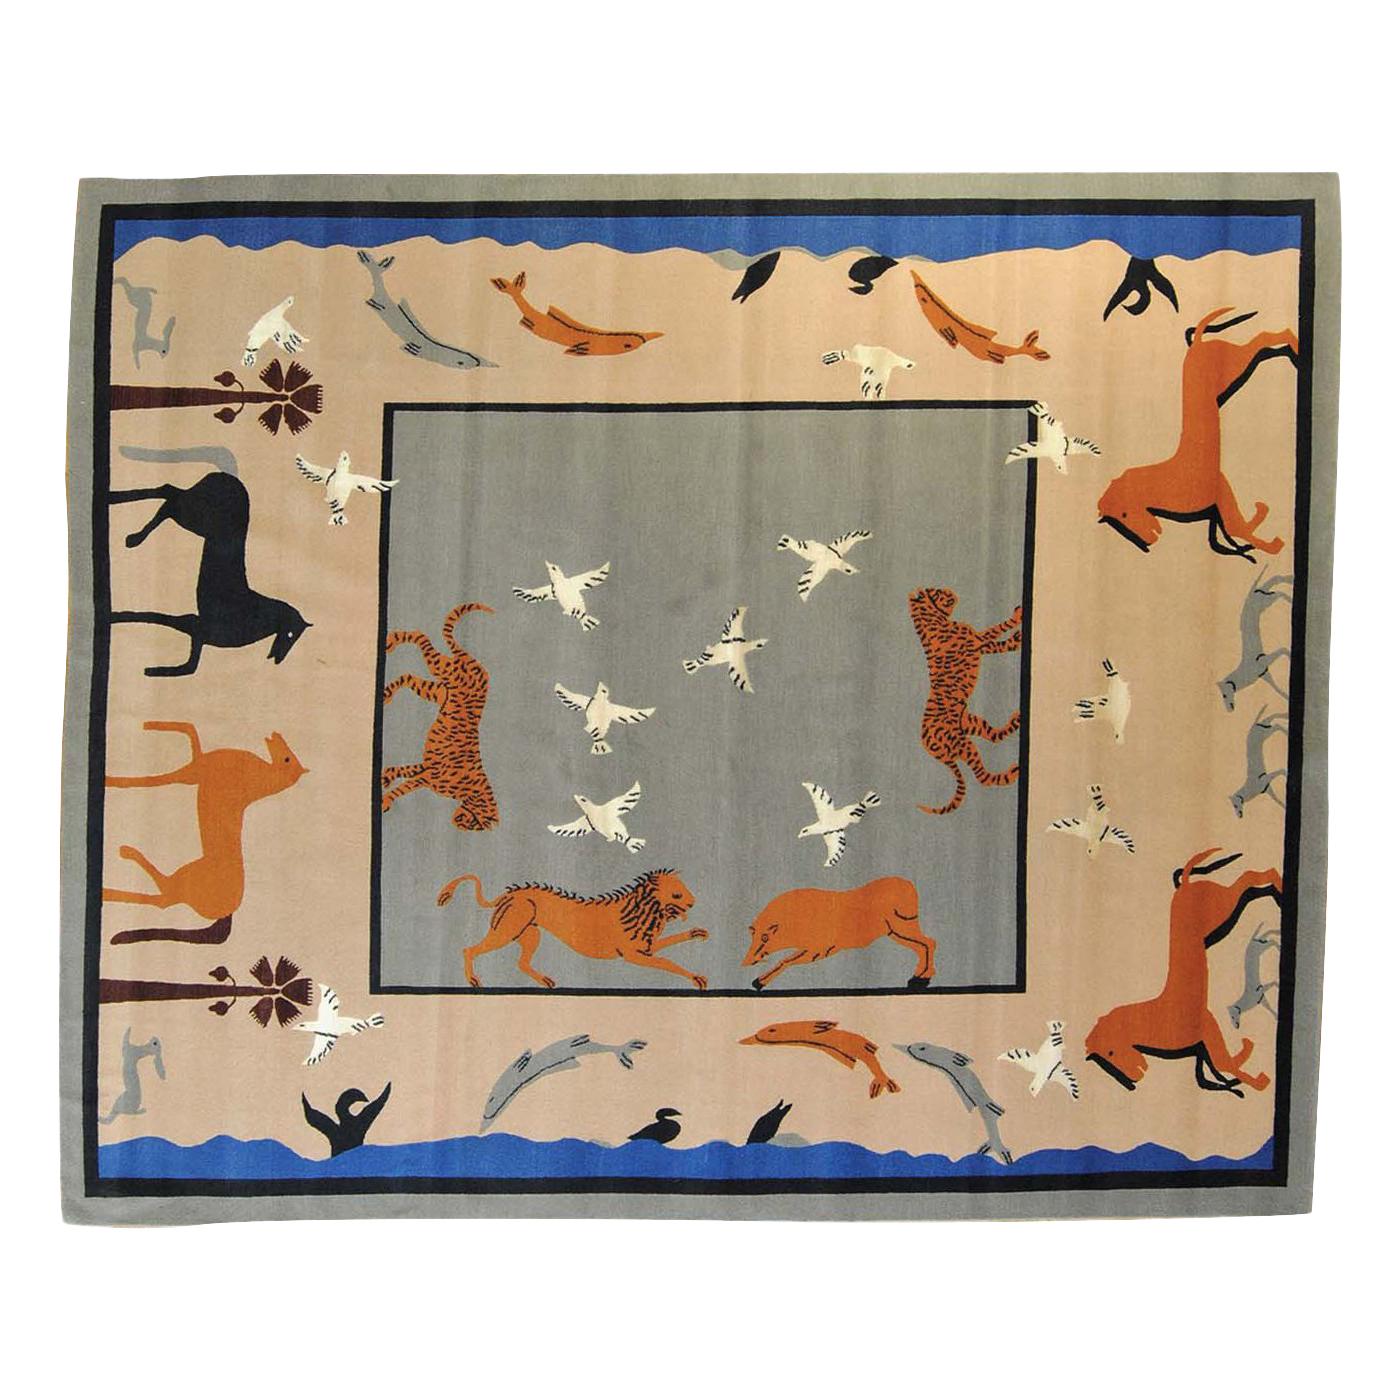 Dalle Gioie Degli Etruschi-Teppich von Linde Burkhardt